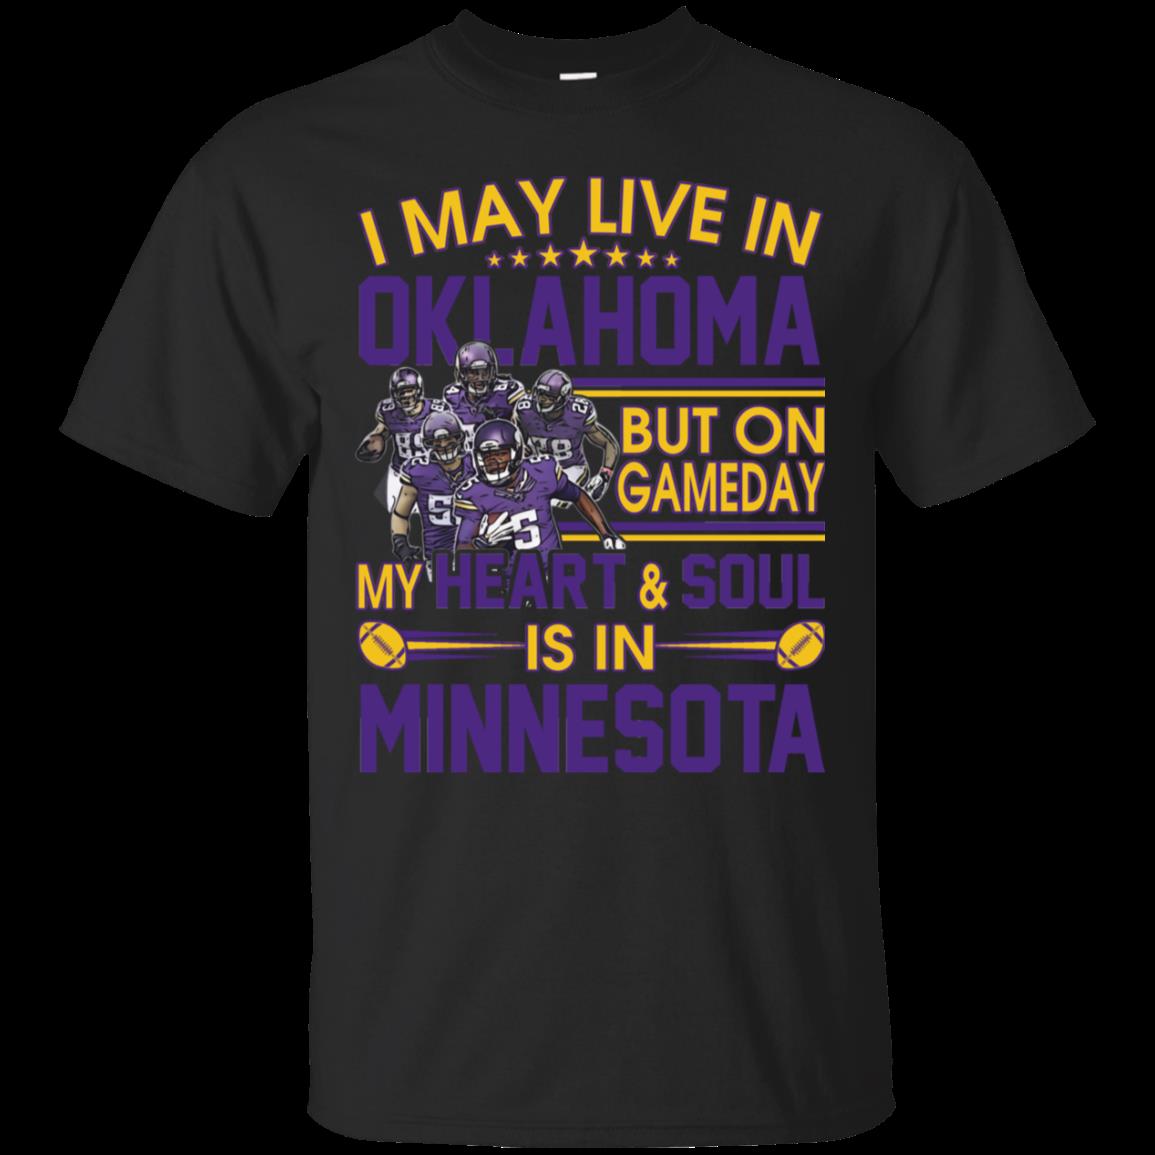 Minnesota Vikings Oklahoma T Shirt Hoodies Sweatshirt funny shirts